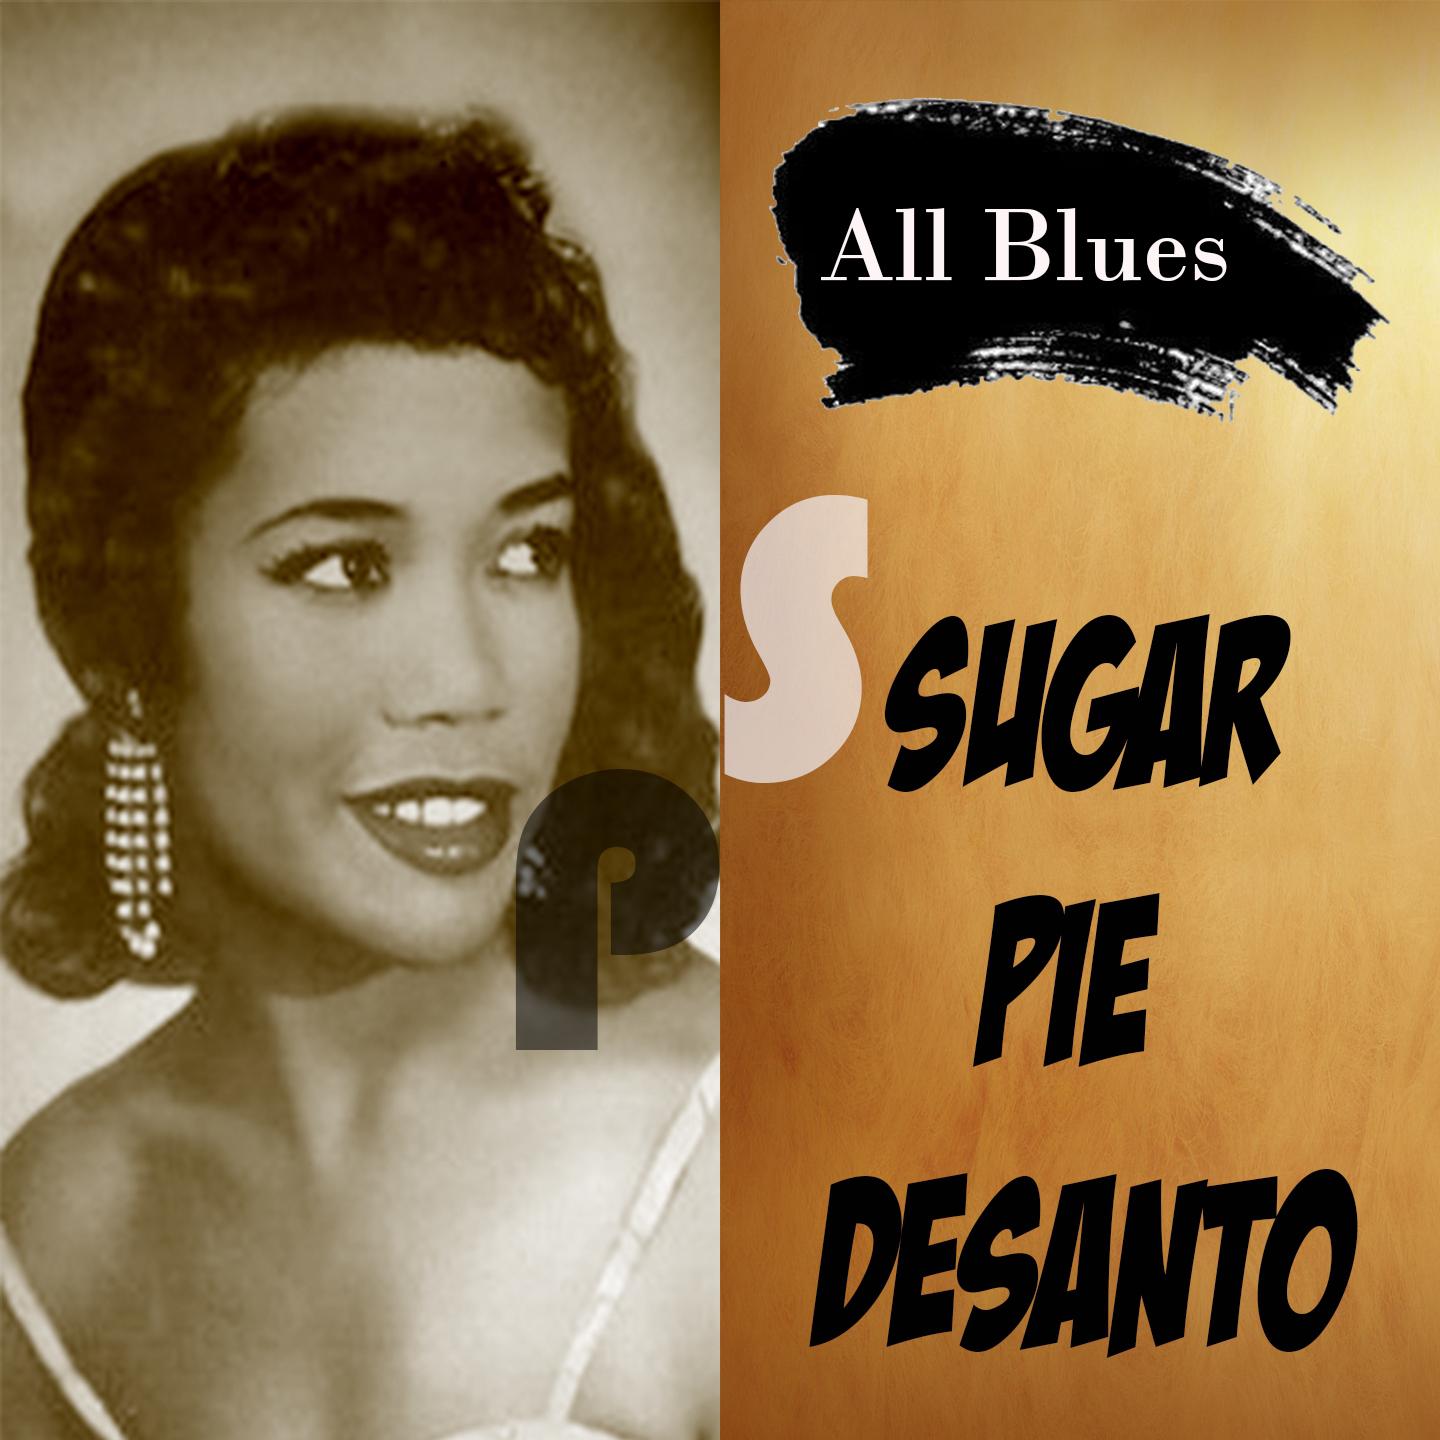 All Blues, Sugar Pie Desanto